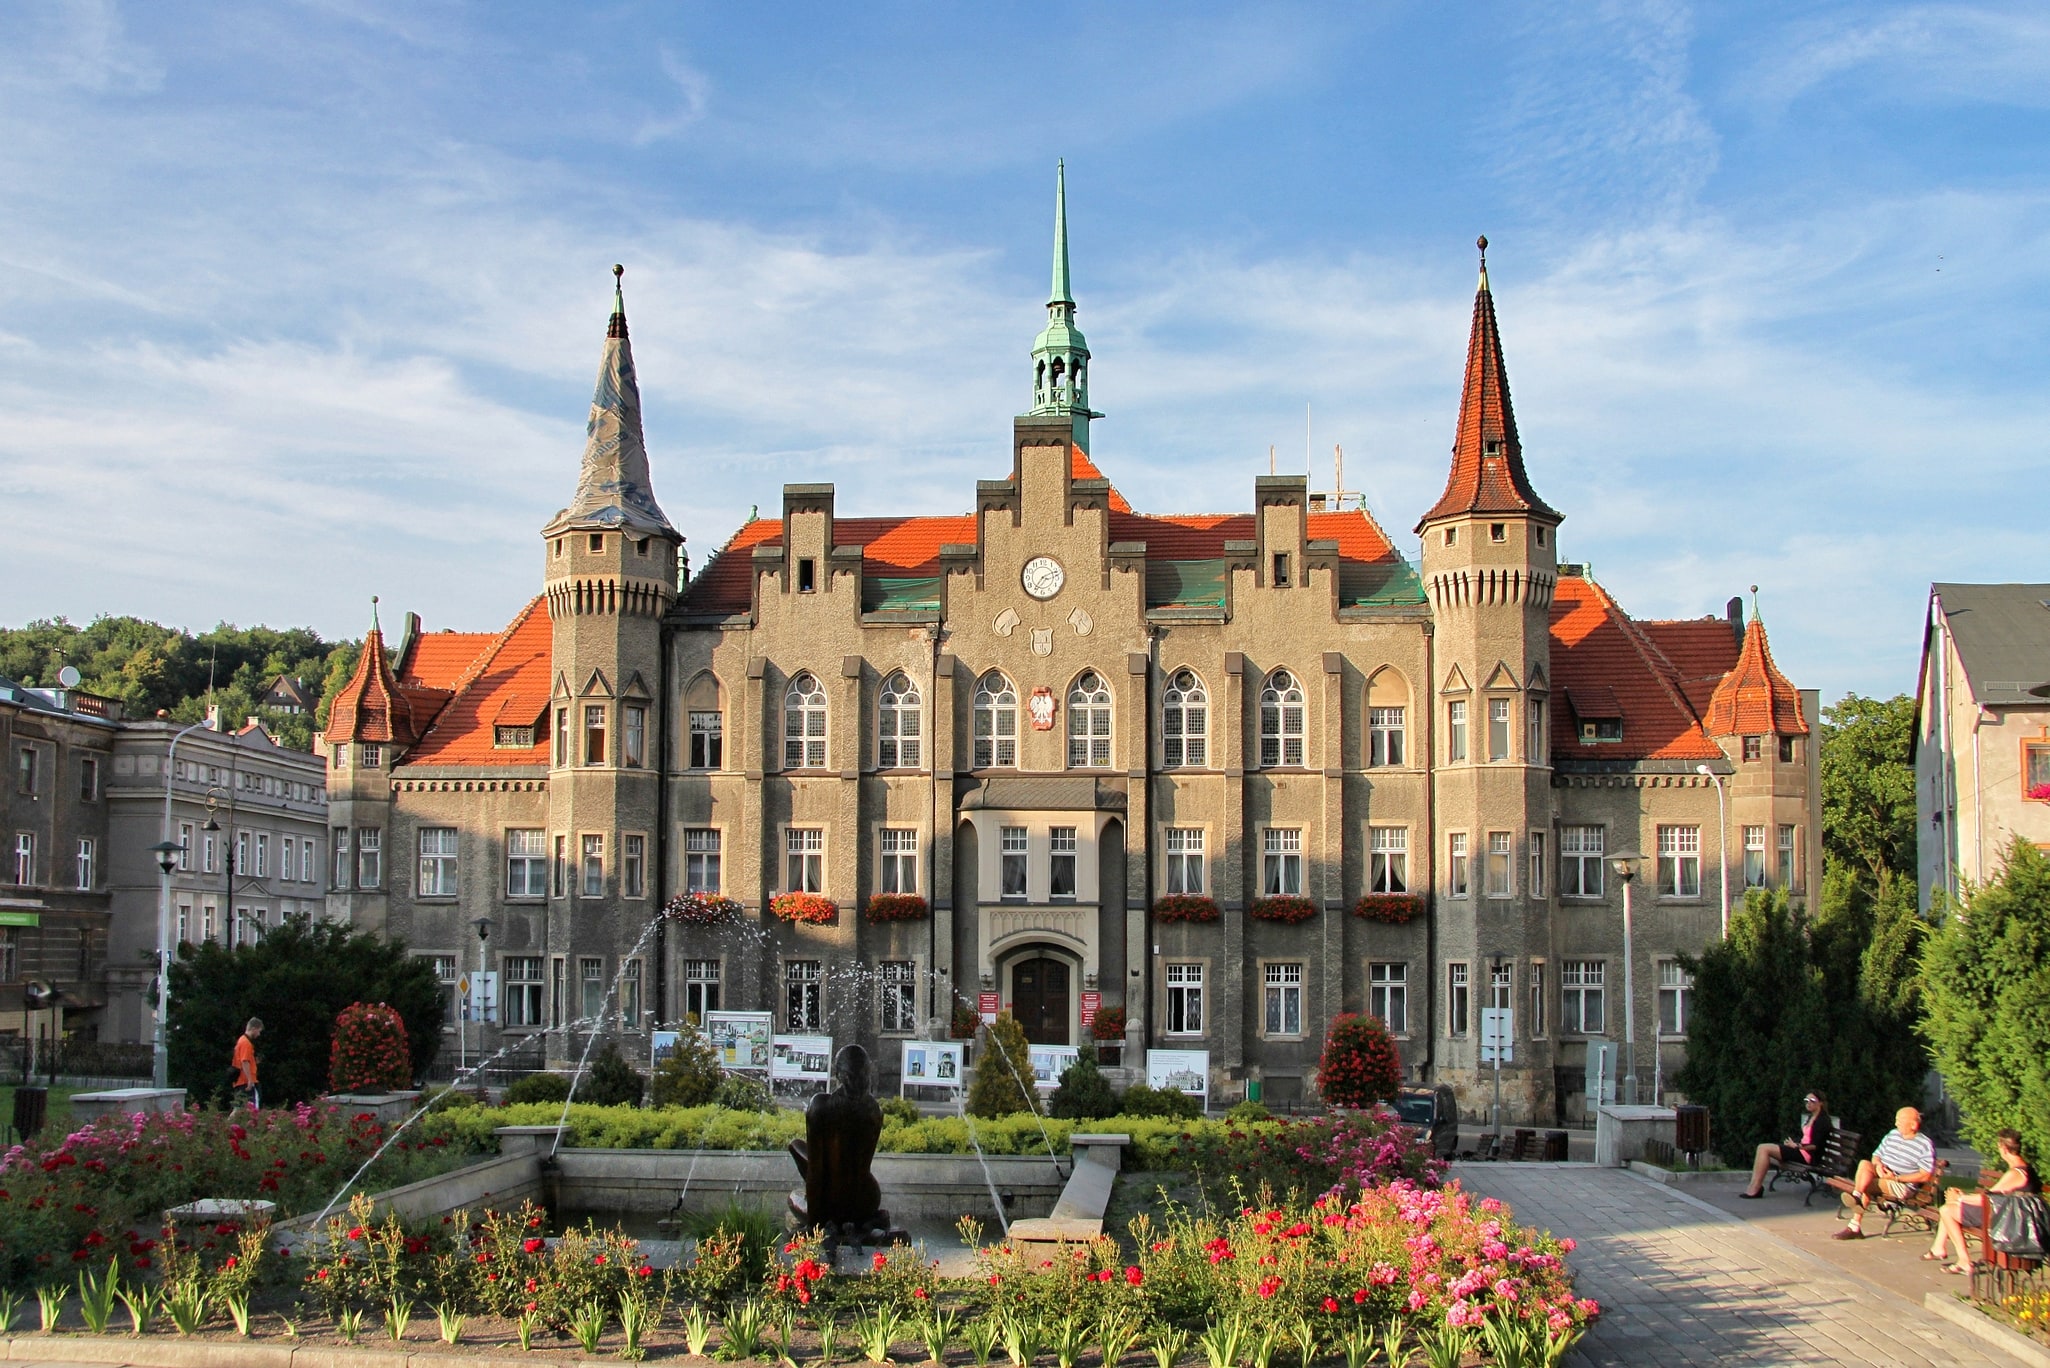 Wałbrzych, Poland